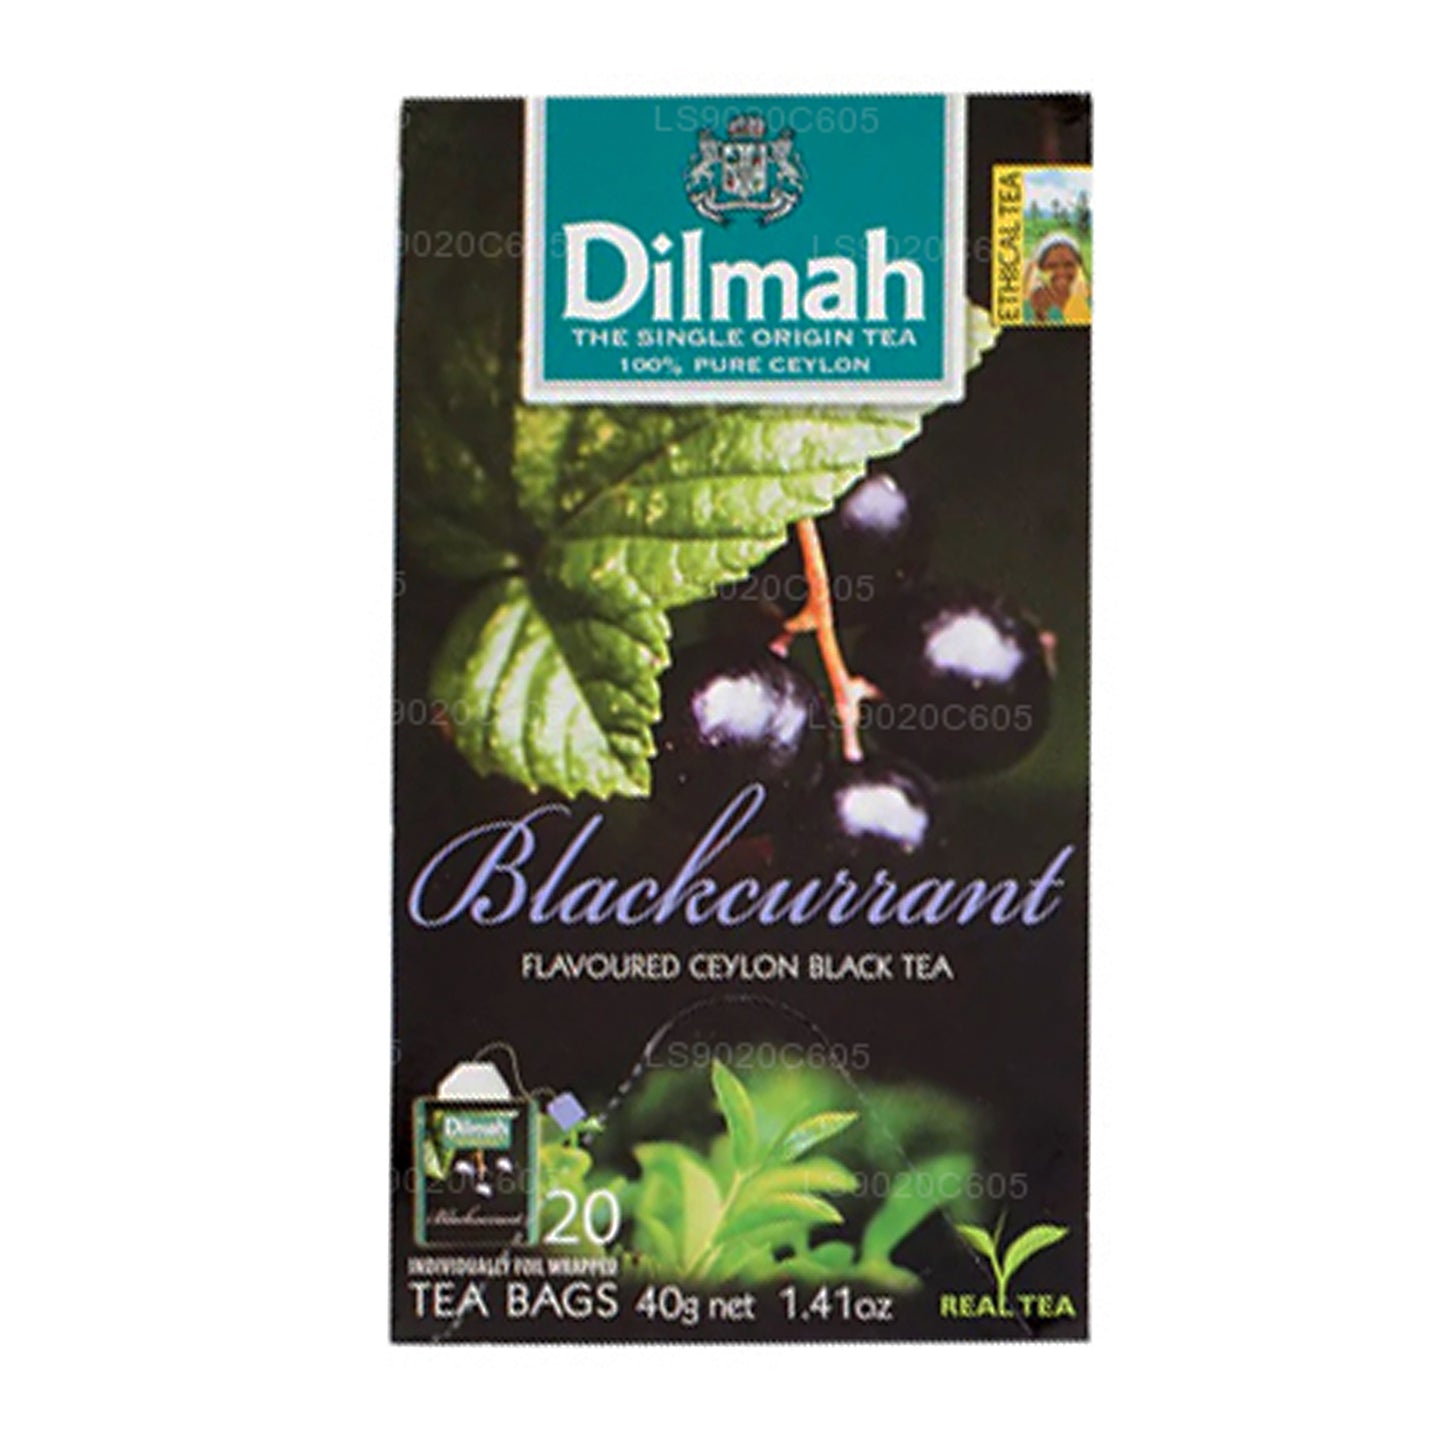 Dilmah thee met zwarte bessensmaak (40 g) 20 theezakjes